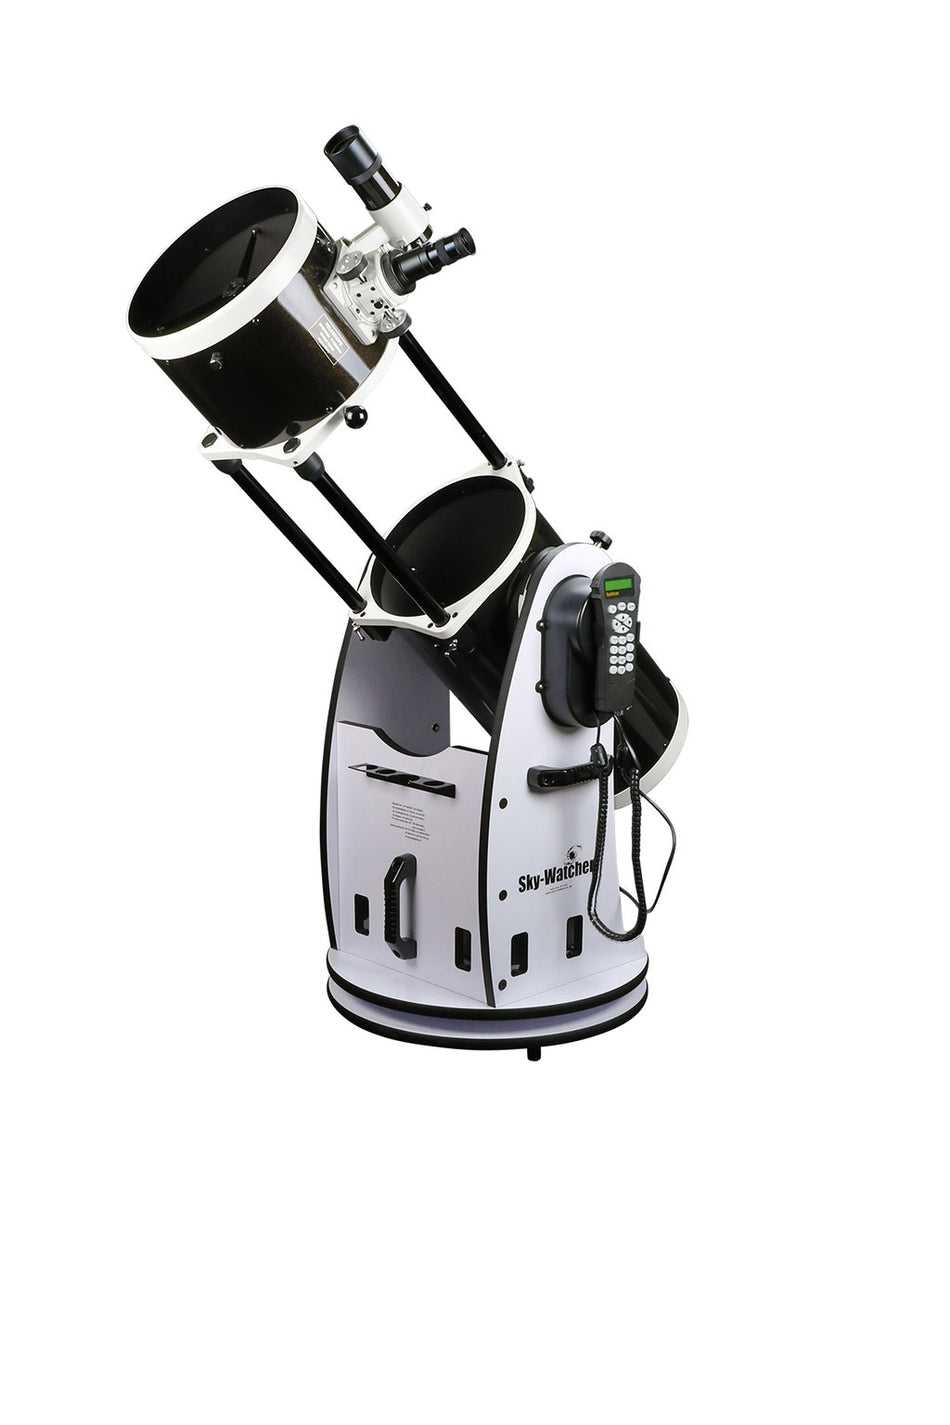 Sky-Watcher Télescope Dobsonien Flextube SynScan 10" avec contrôleur manuel - S11810